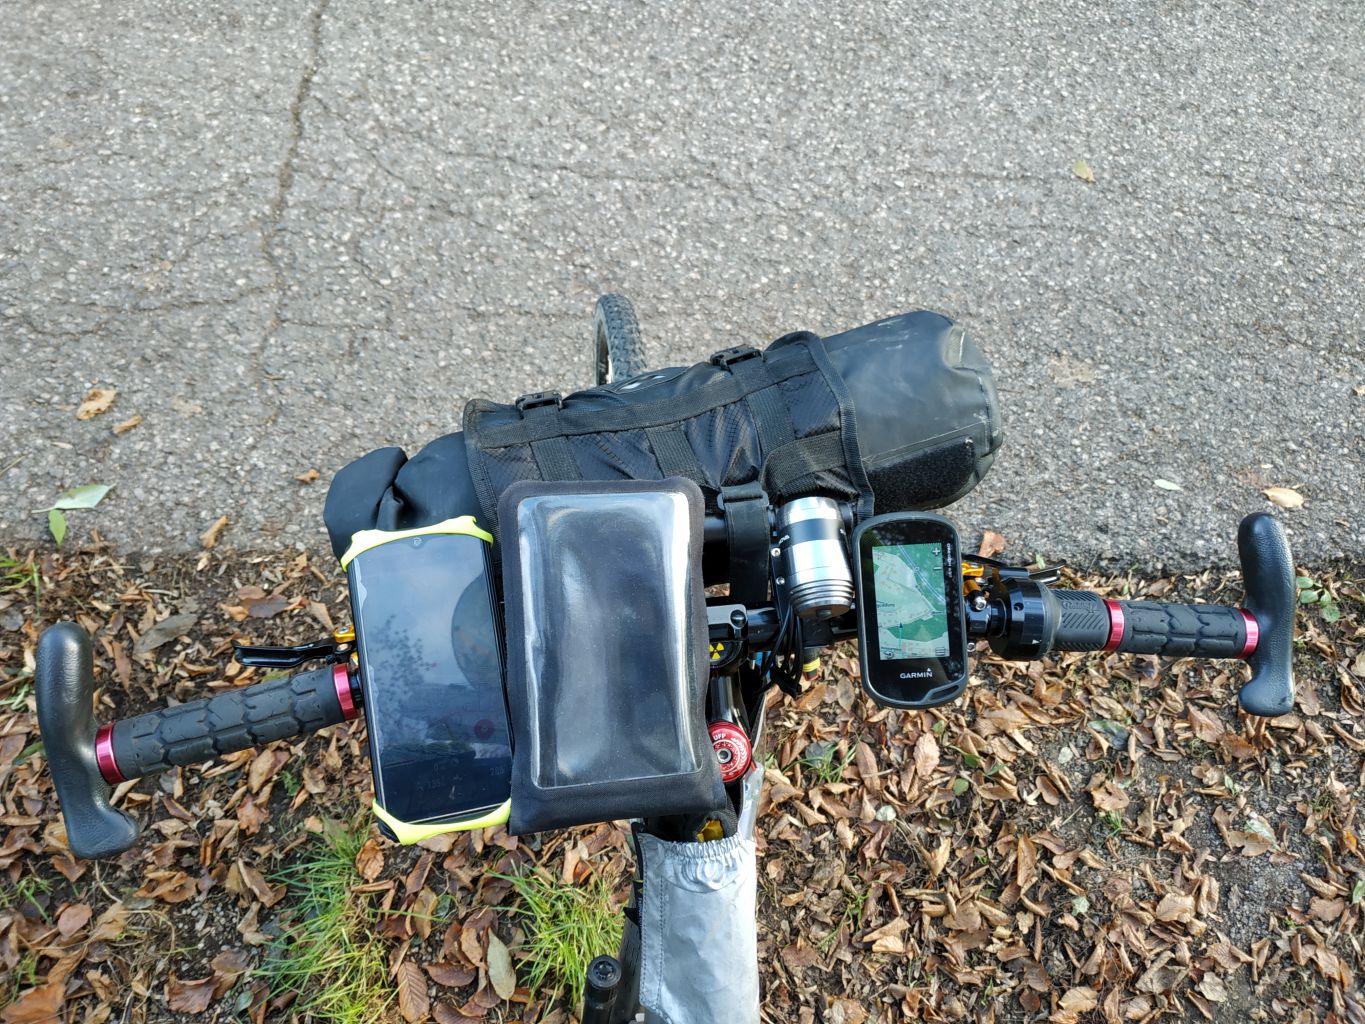 Cube Acid Fahrrad-Handy-/Smartphone-Halterung schwarz